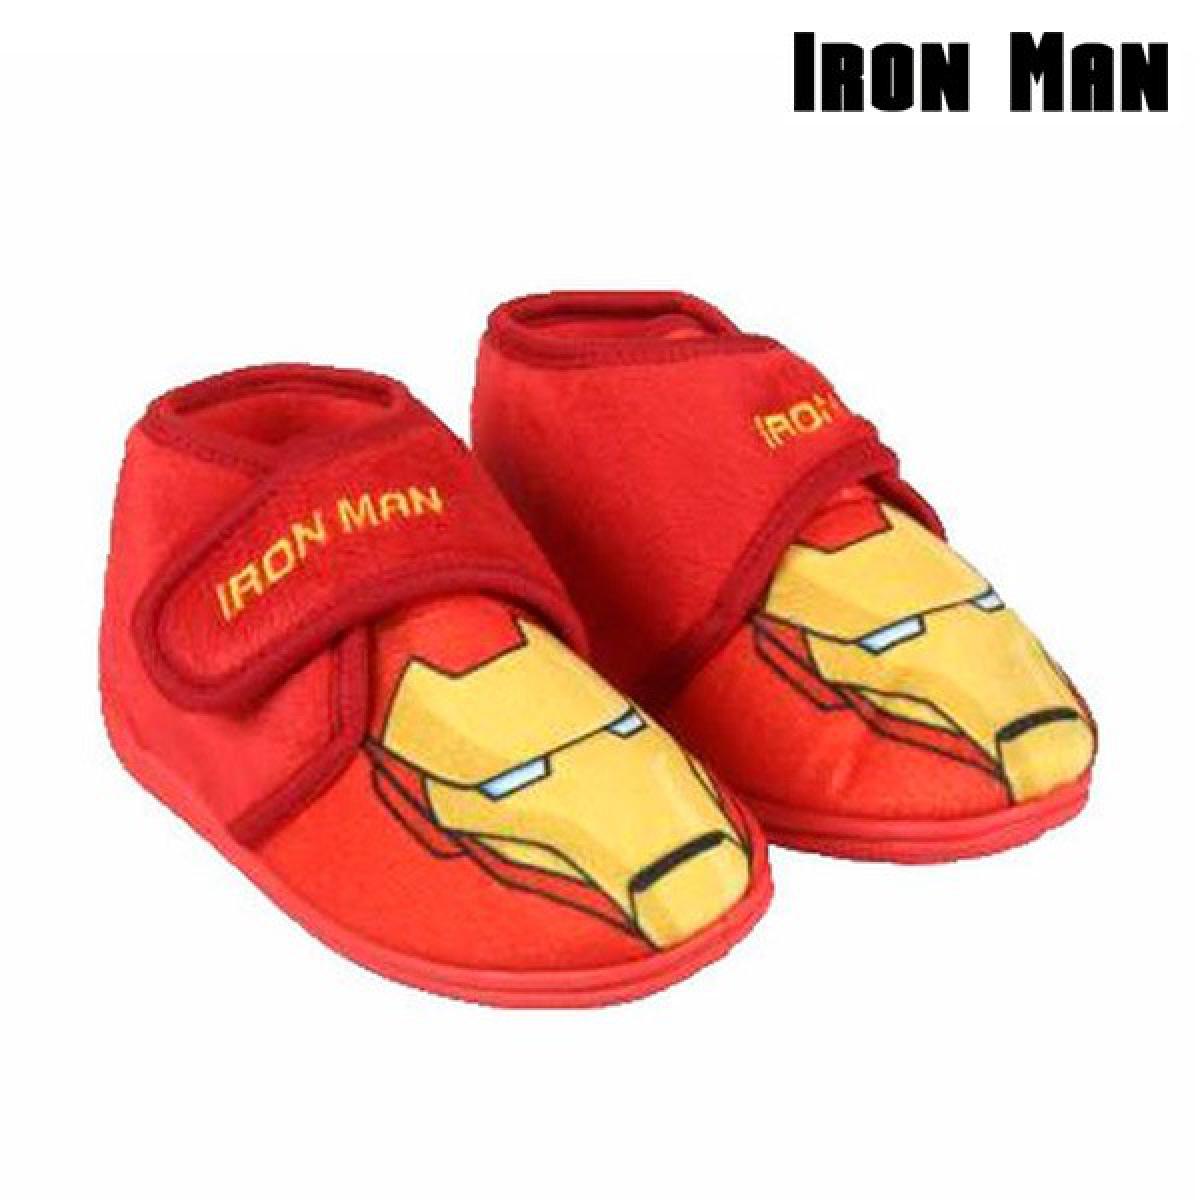 Totalcadeau - Chaussons pour enfant superhéros avec fermeture velcro rouge Iron man Pas cher - Rangements à chaussures